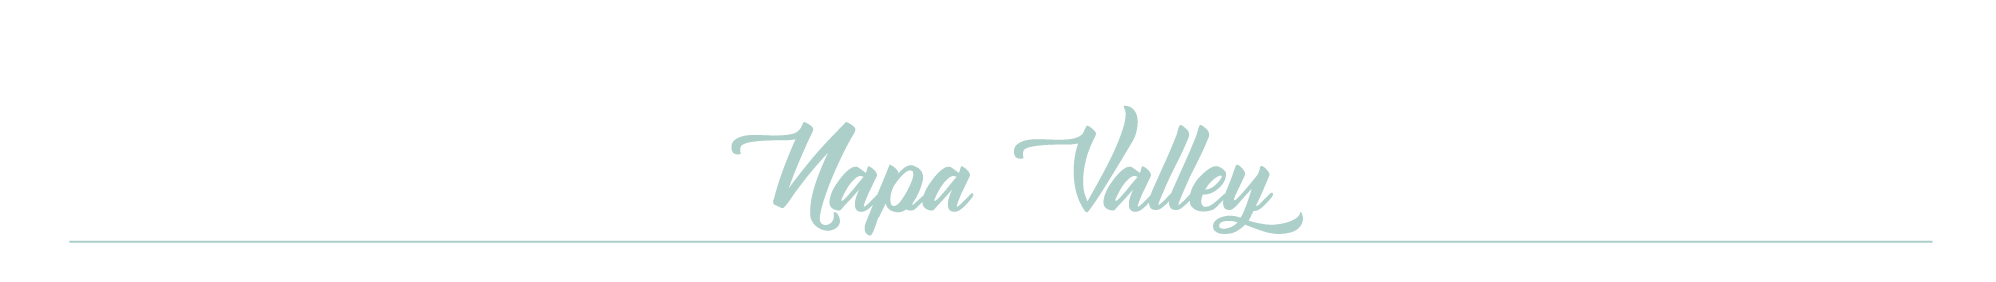 Napa Valley AVA